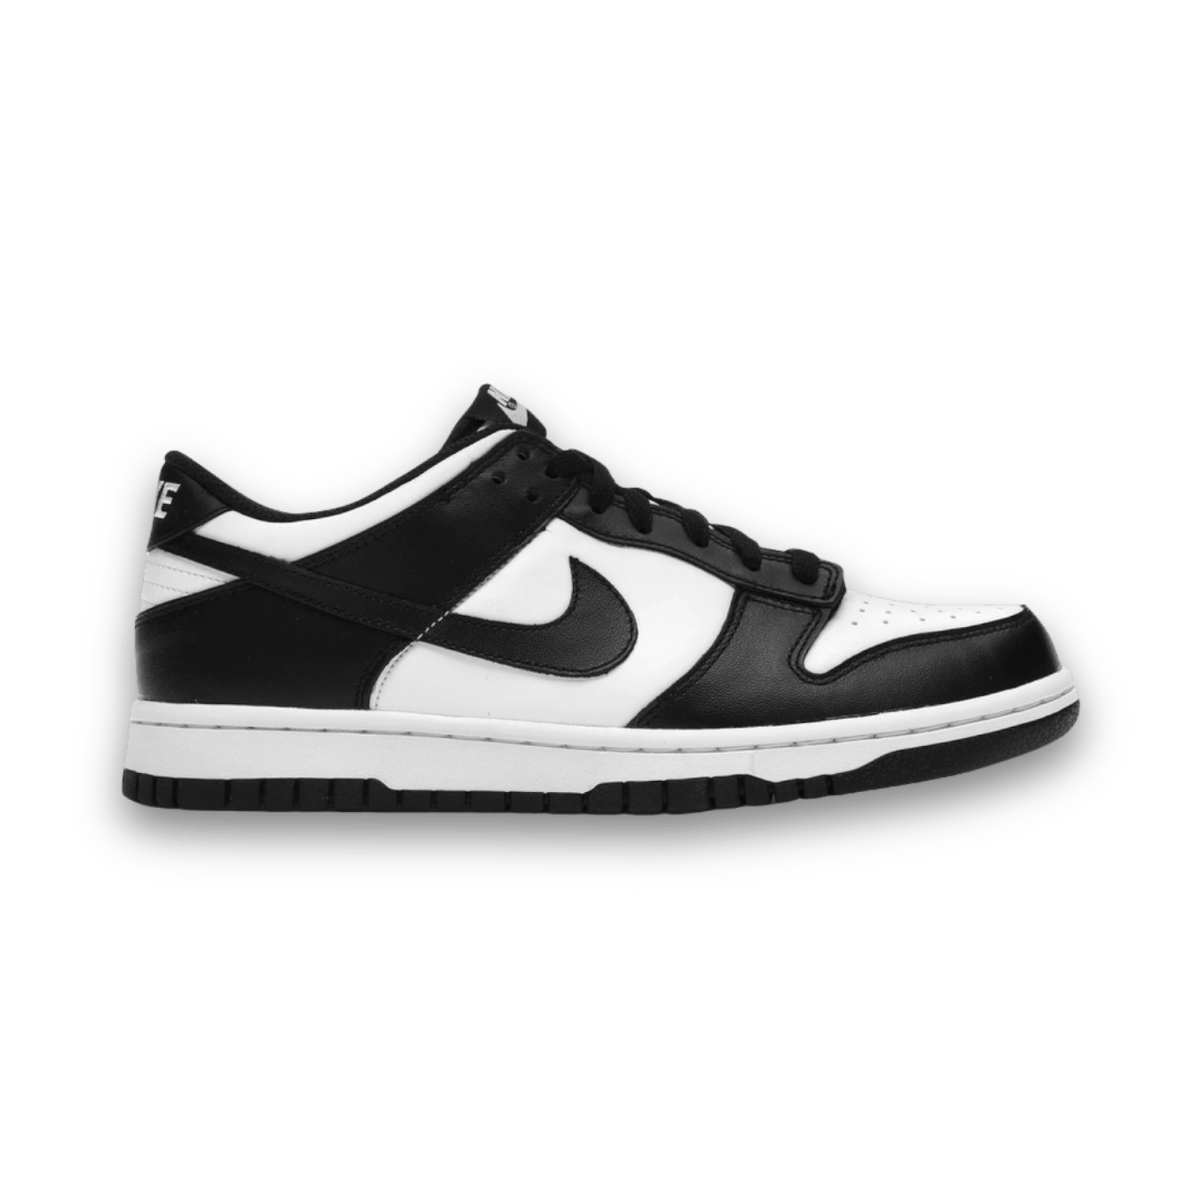 Dunk Low Retro White Black Panda - Low Sneaker - Jawns on Fire Sneakers & Streetwear